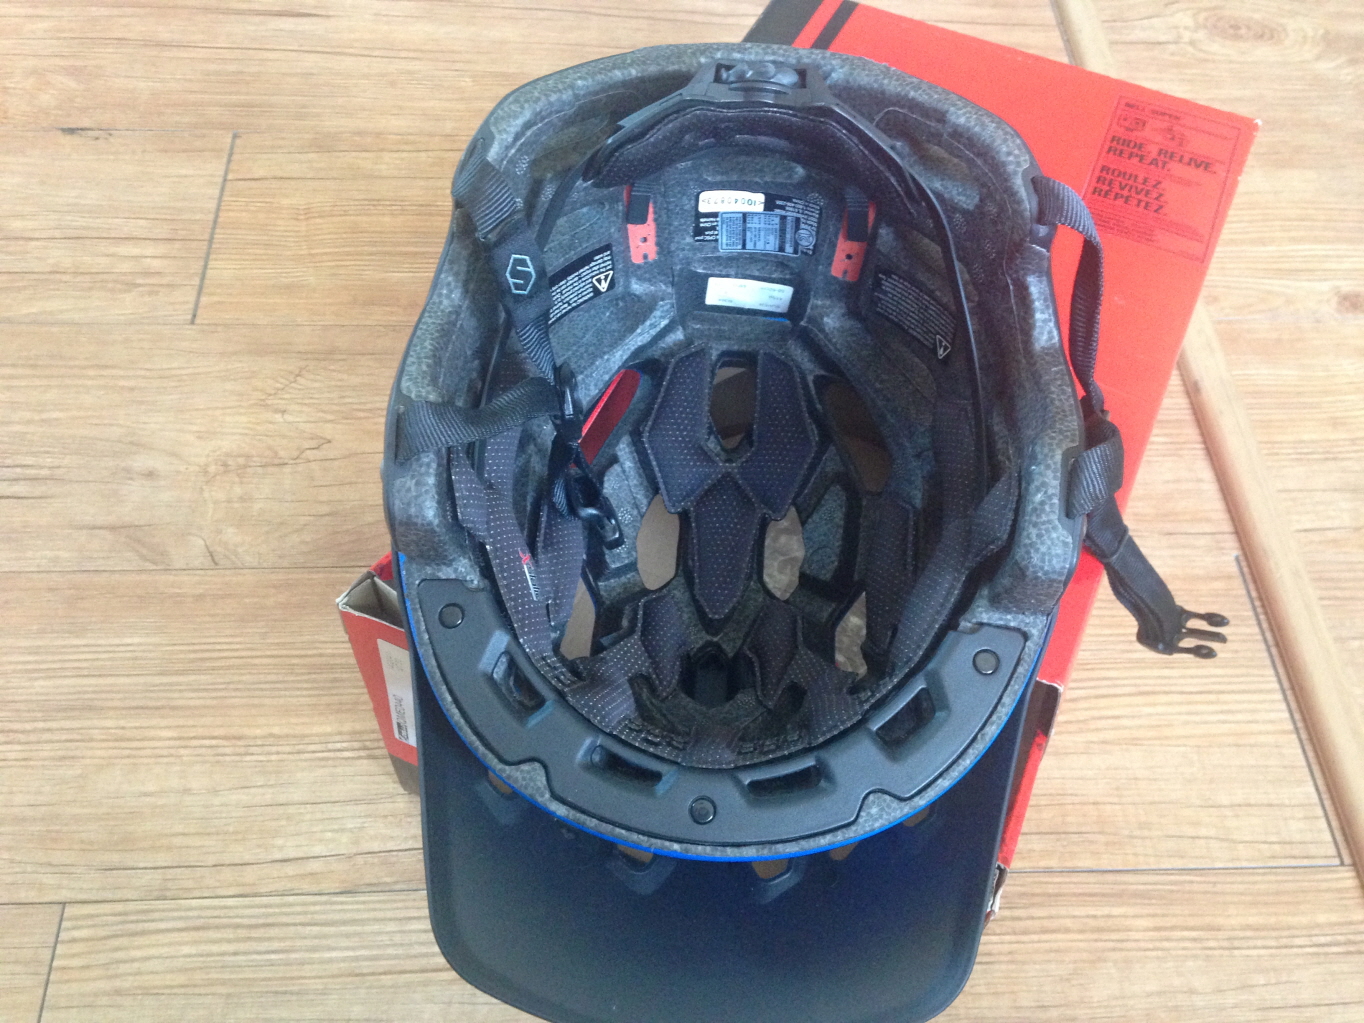 RIMG_5442.JPG : 벨 슈퍼 헬멧 (올마용) 팝니다 ^^